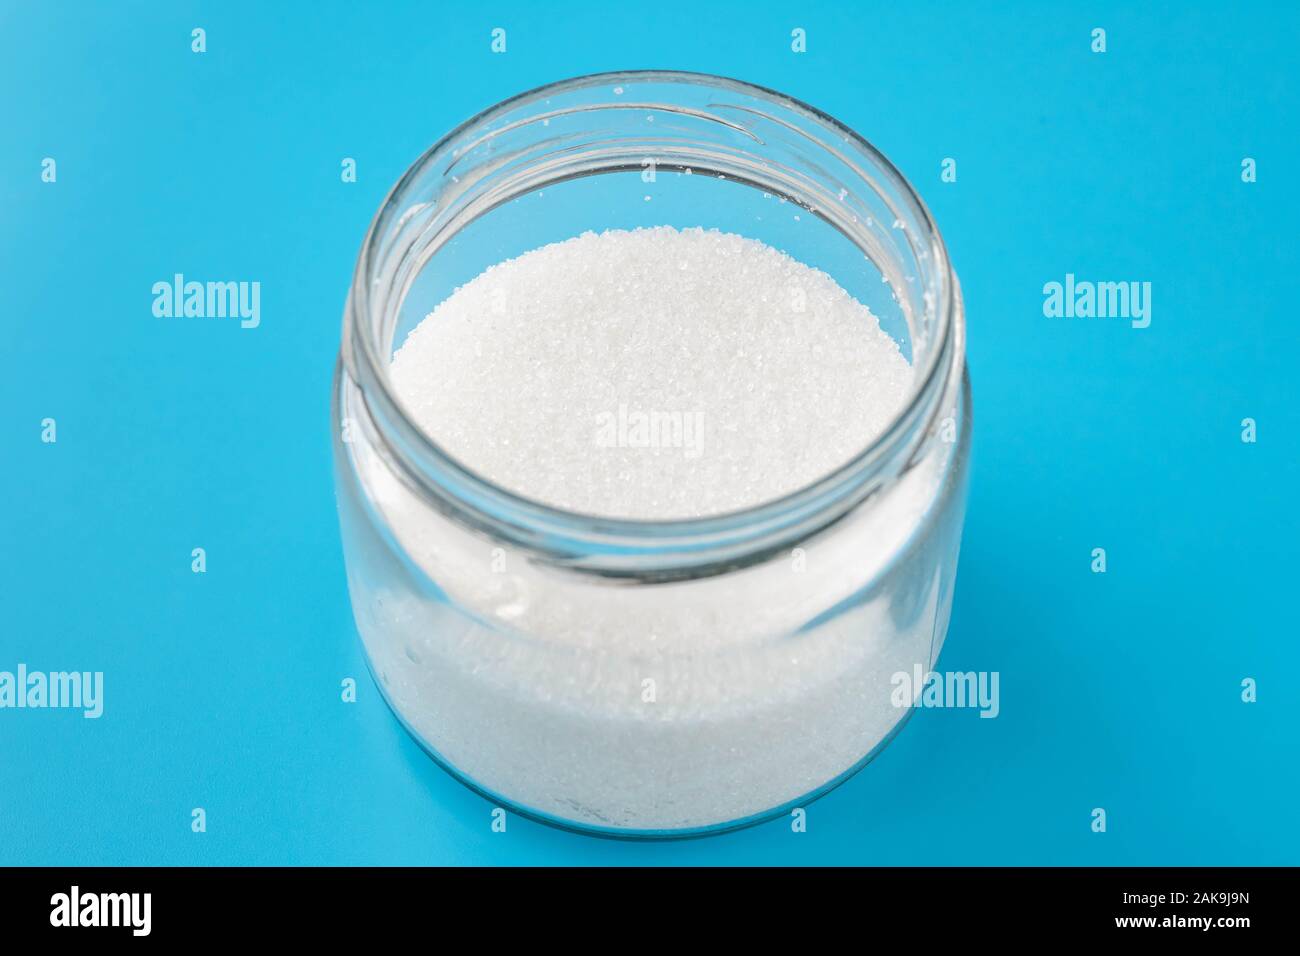 Ein Haufen Zucker in einem Glas auf blauem Hintergrund. Der runden transparenten Bank mit kristallinem Zucker Stockfoto